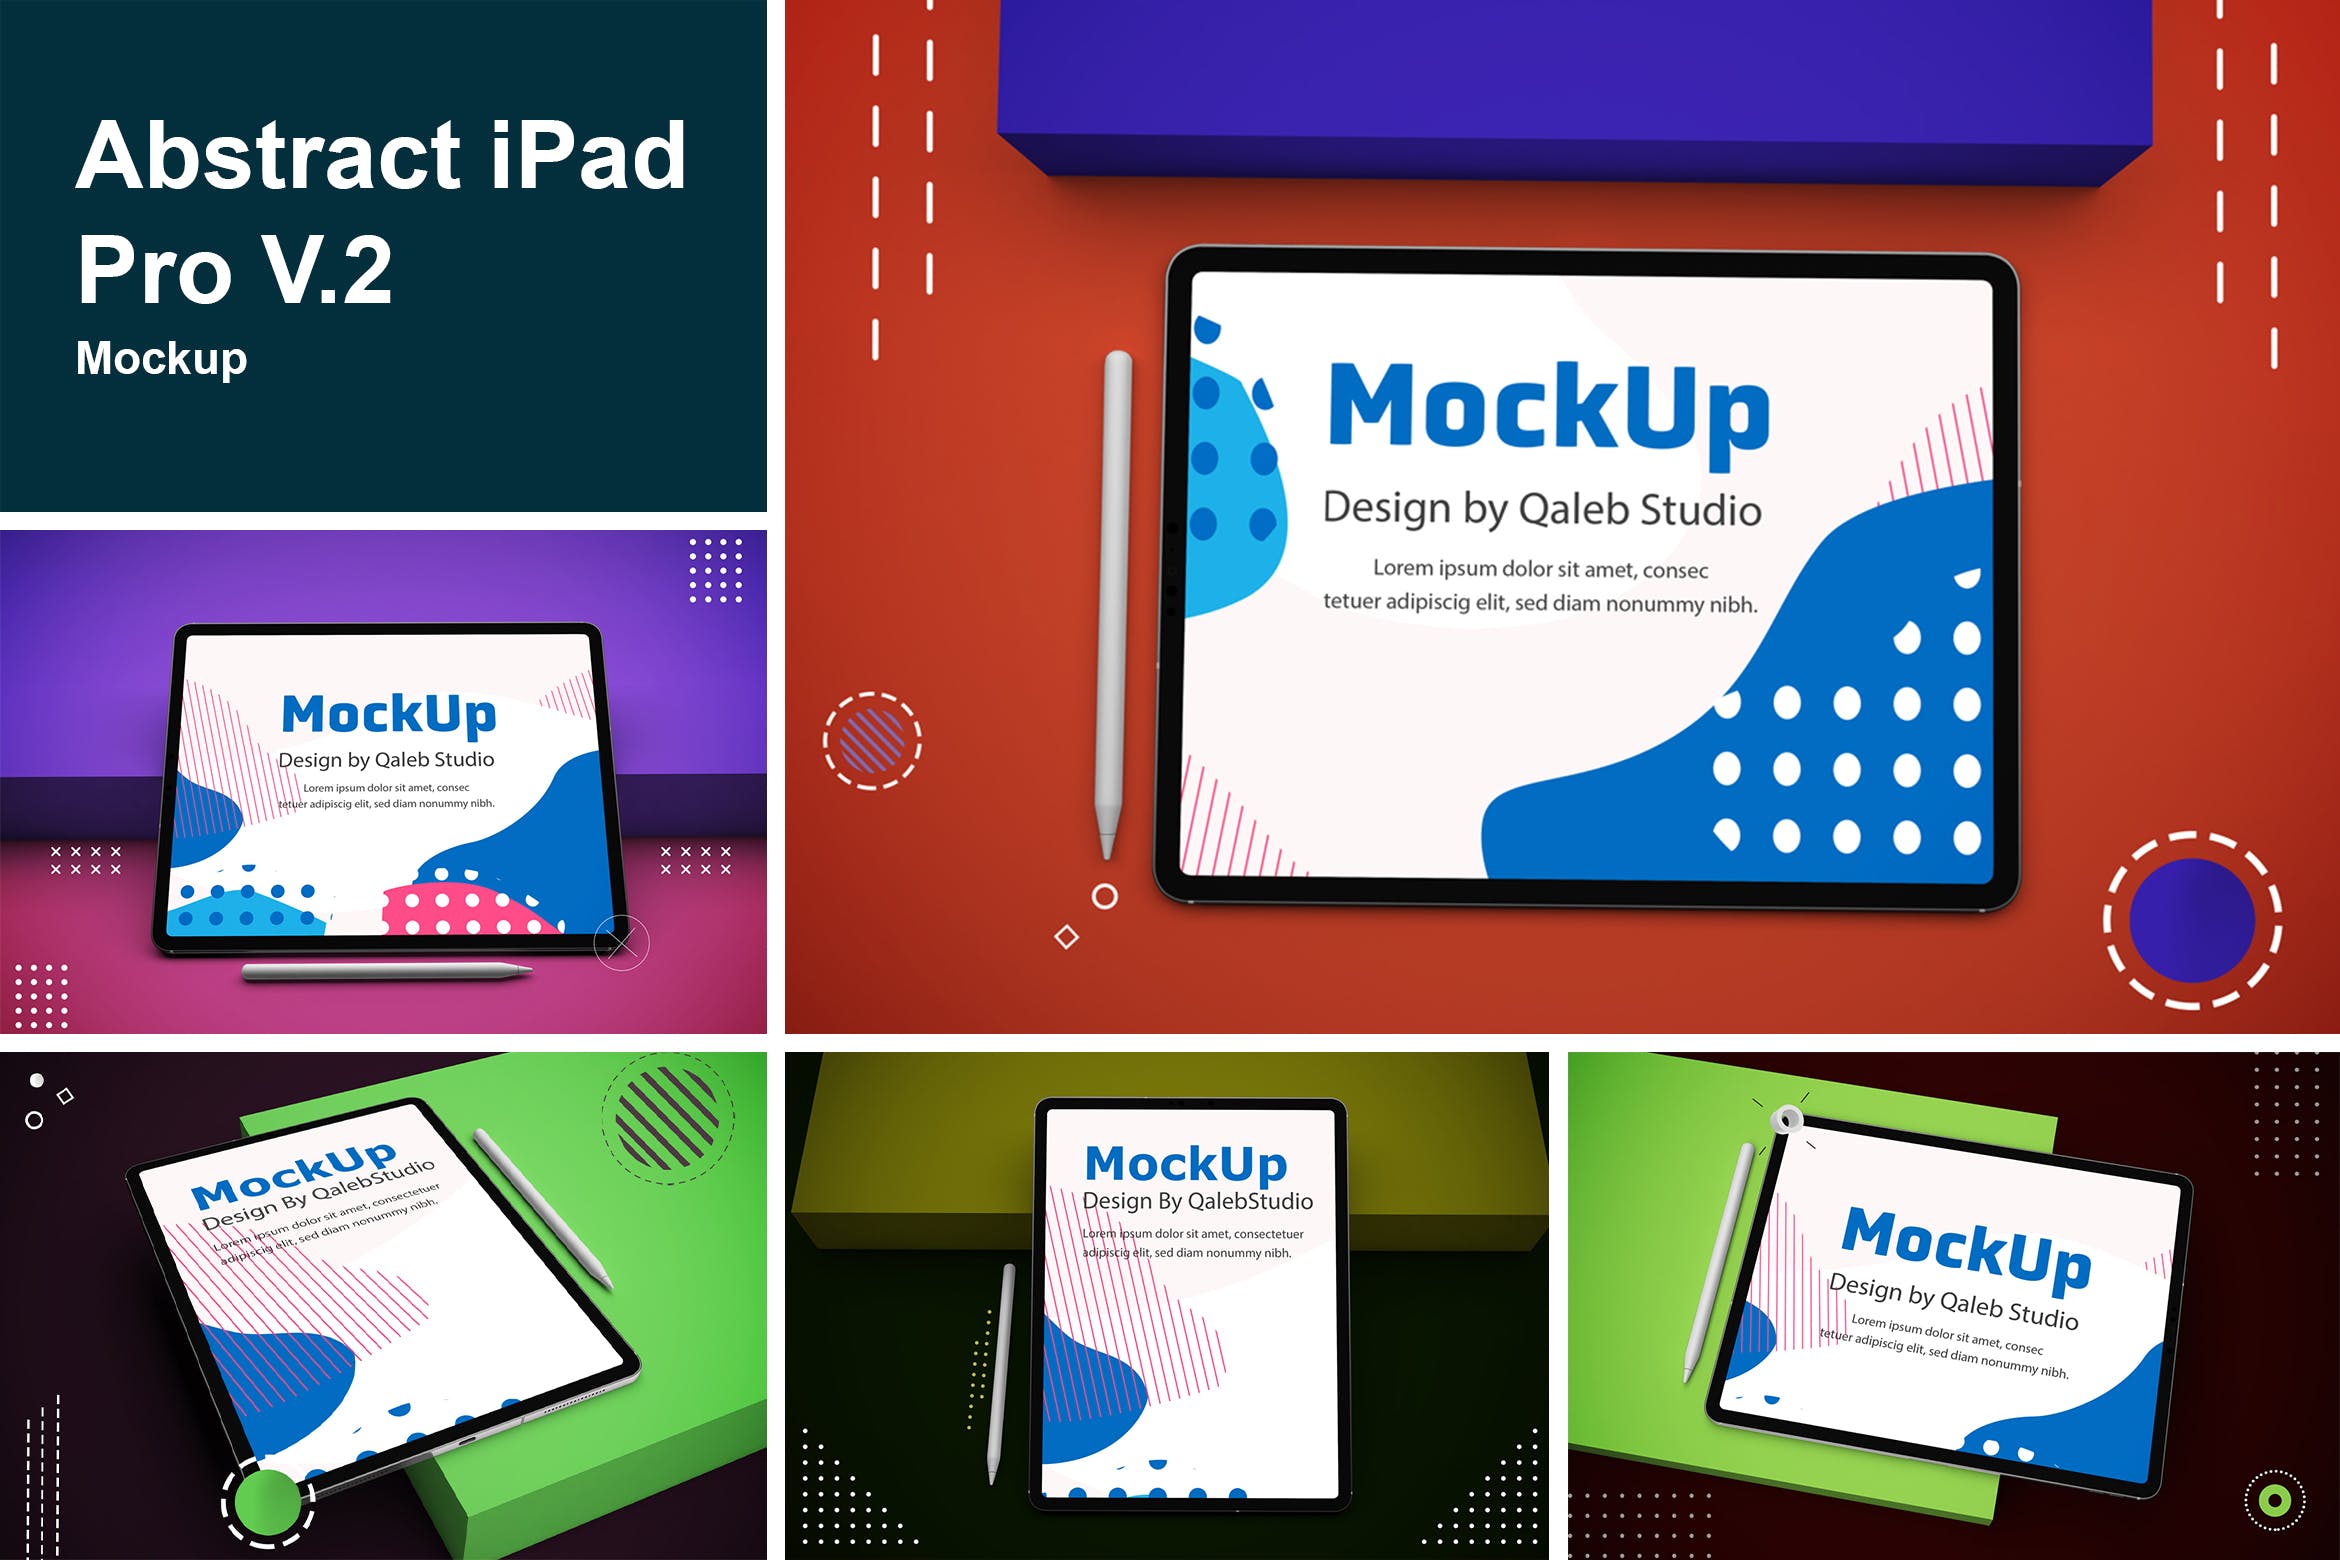 抽象设计风格iPad Pro平板电脑屏幕效果图蚂蚁素材精选样机v2 Abstract iPad Pro V.2 Mockup插图